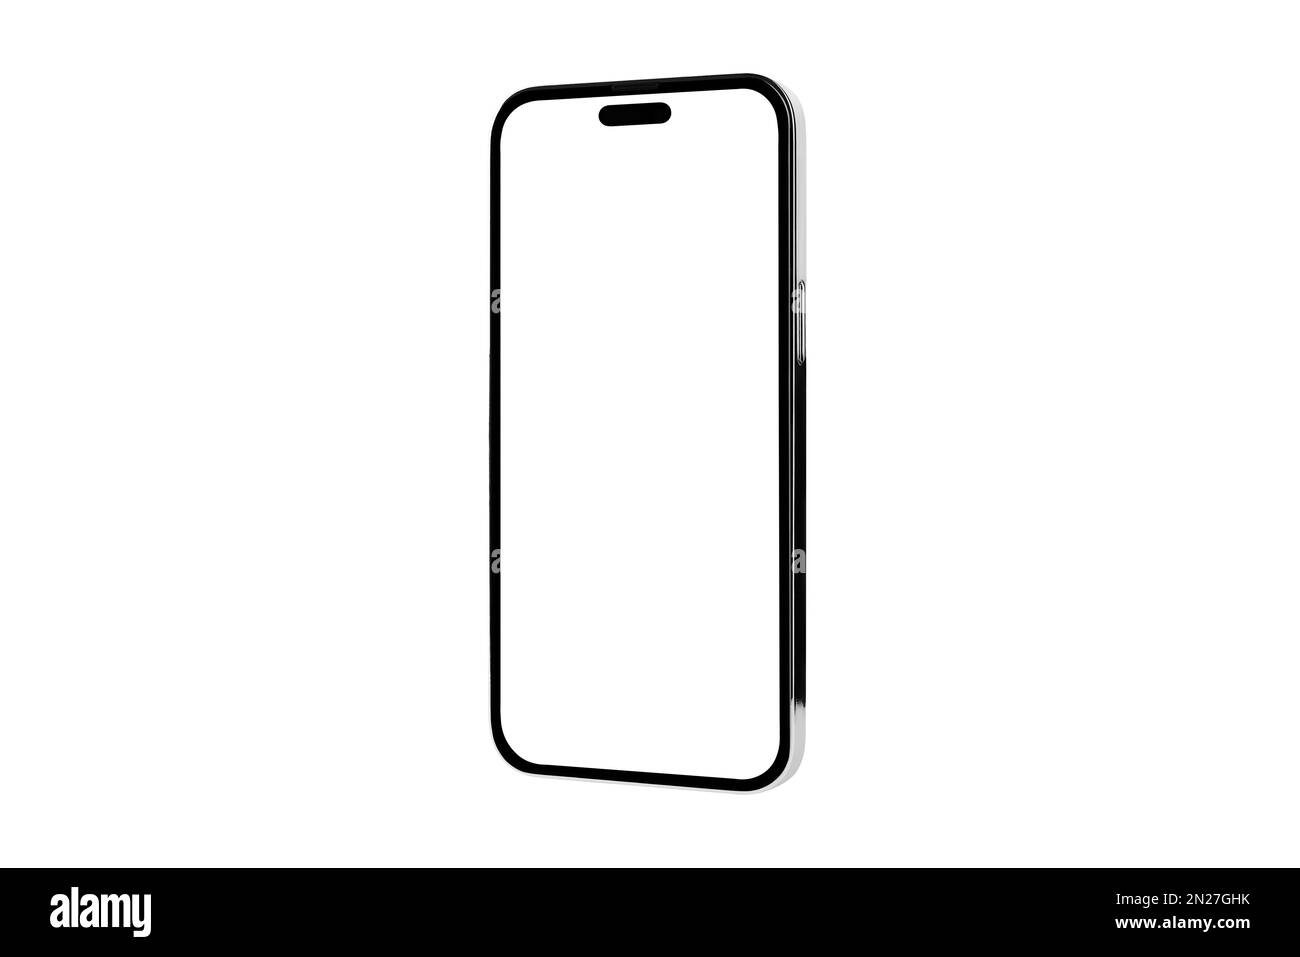 Iphone x mockup Ausgeschnittene Stockfotos und -bilder - Alamy